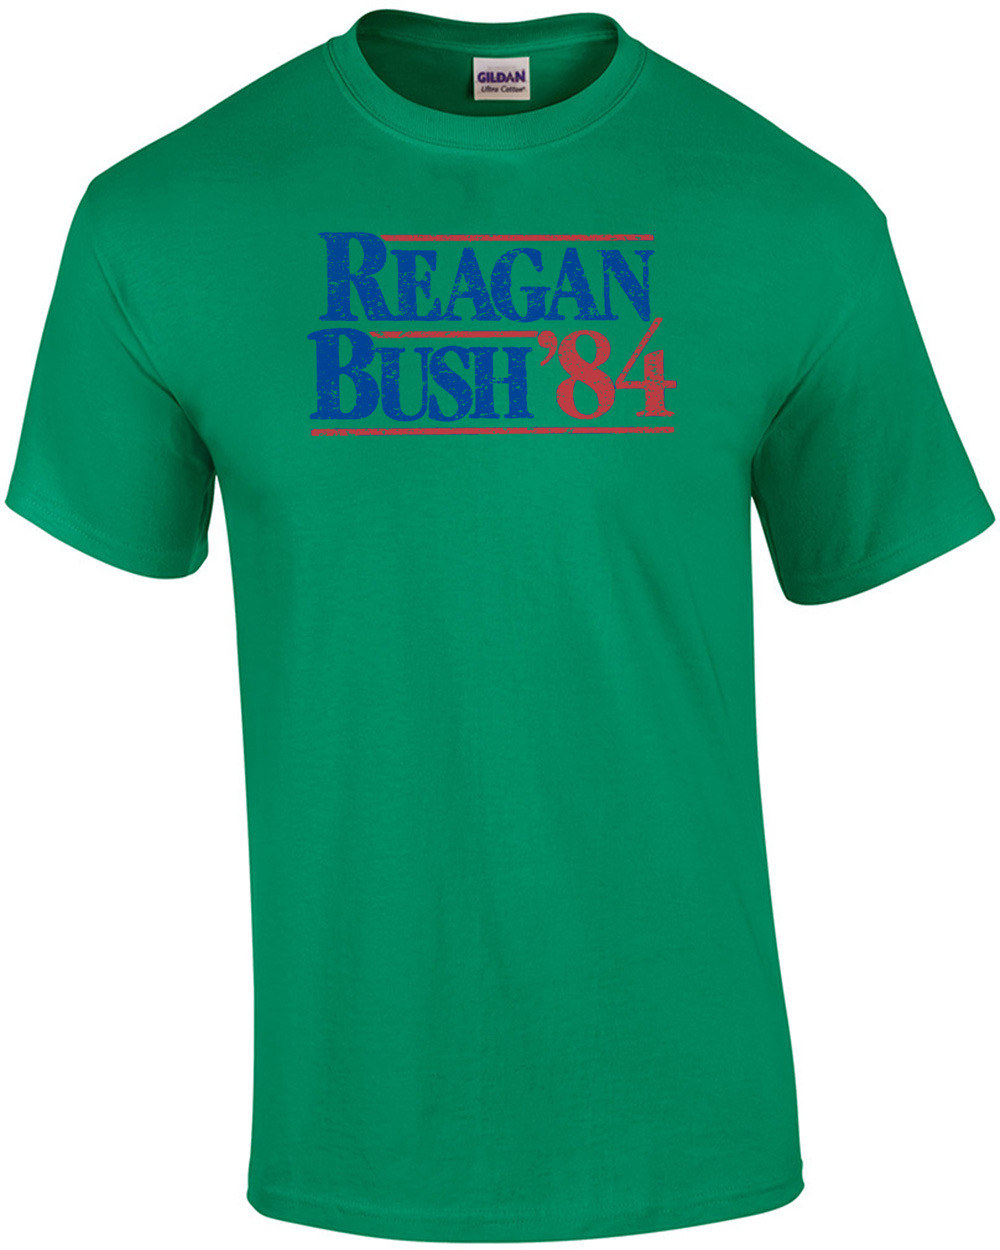 Reagan Bush 84 Shirt Ebay